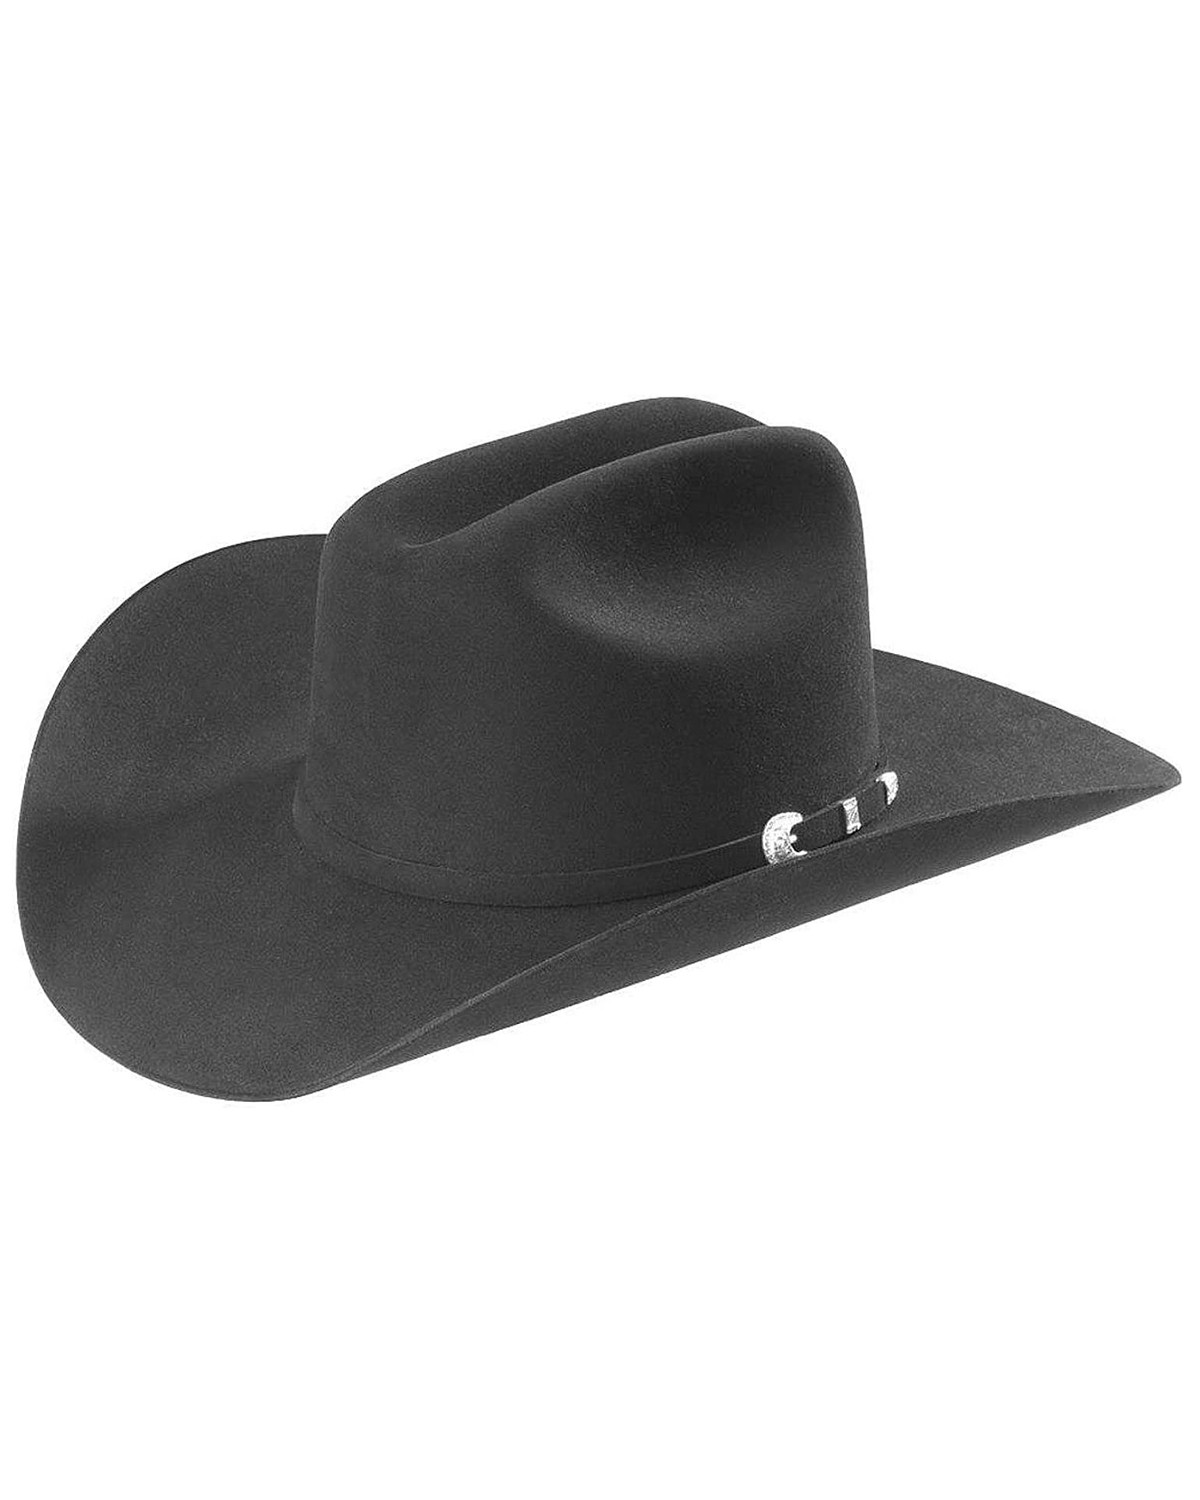 Black Cowboy Hats